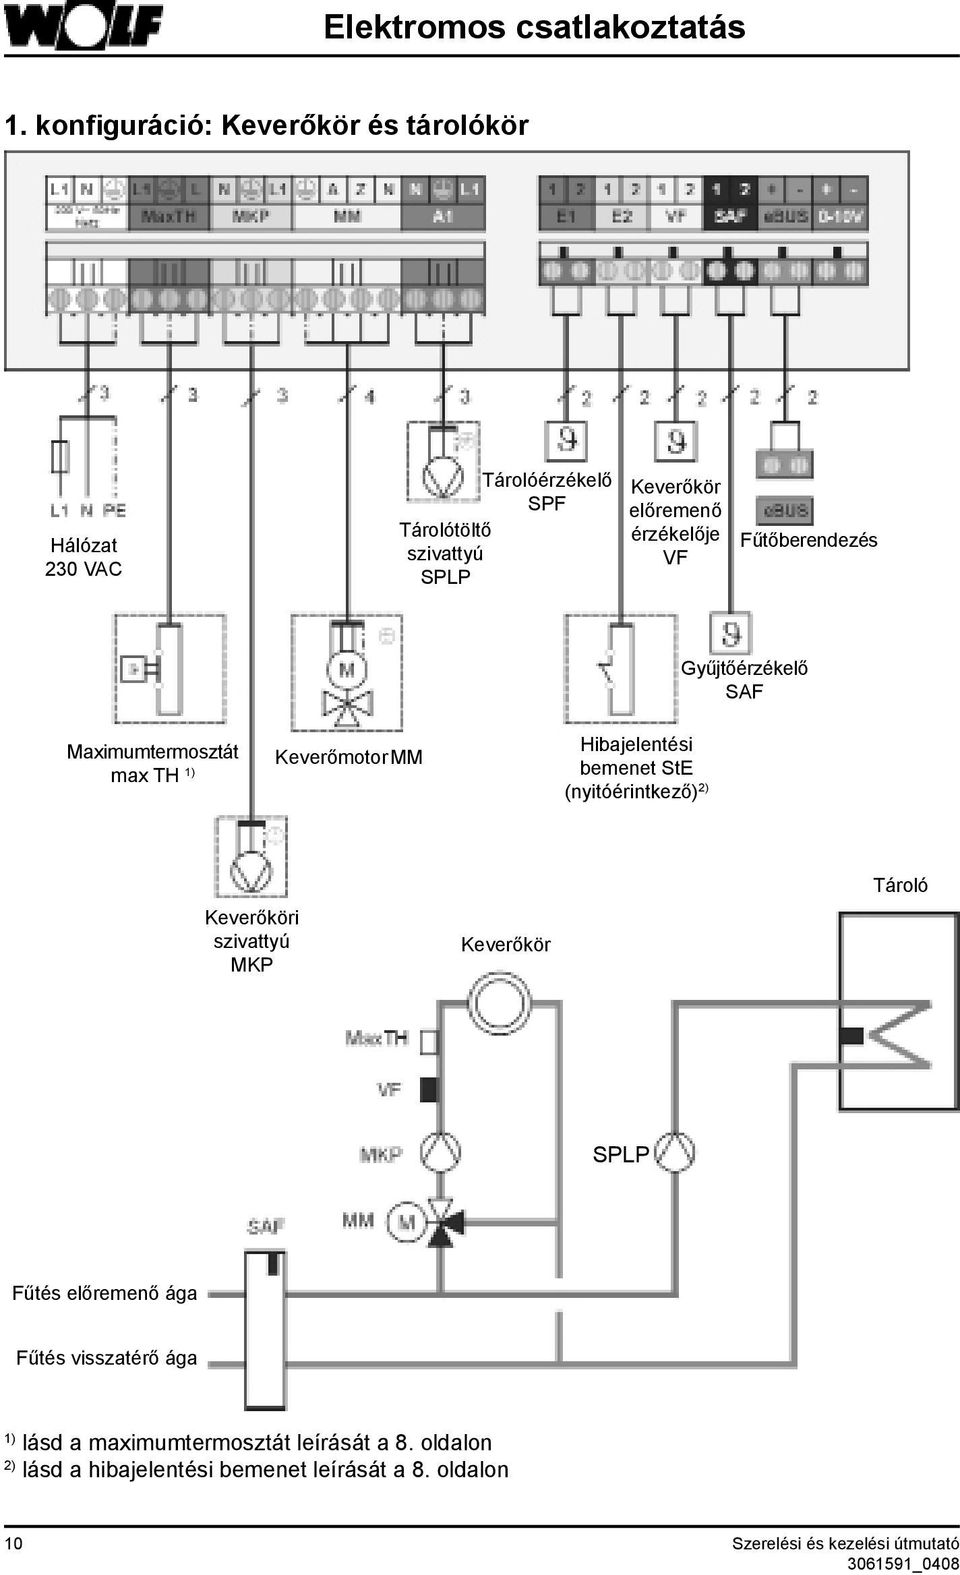 érzékelője VF Fűtőberendezés Maximumtermosztát max TH 1) Keverőmotor MM Hibajelentési bemenet StE (nyitóérintkező) 2)